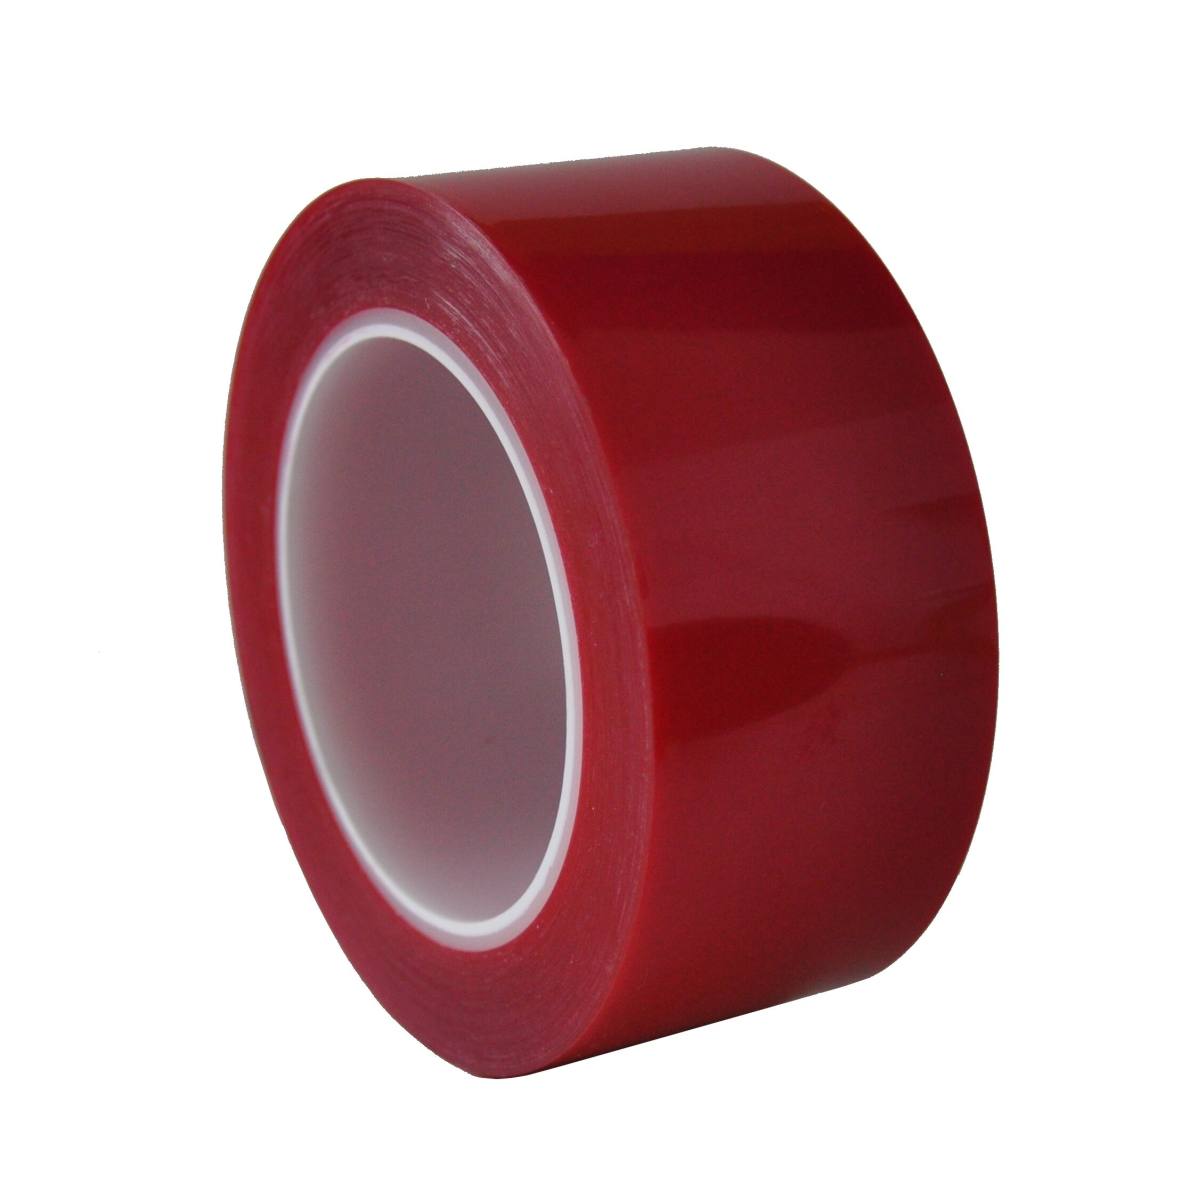 S-K-S 208R nastro adesivo in poliestere, 15mmx66m, rosso